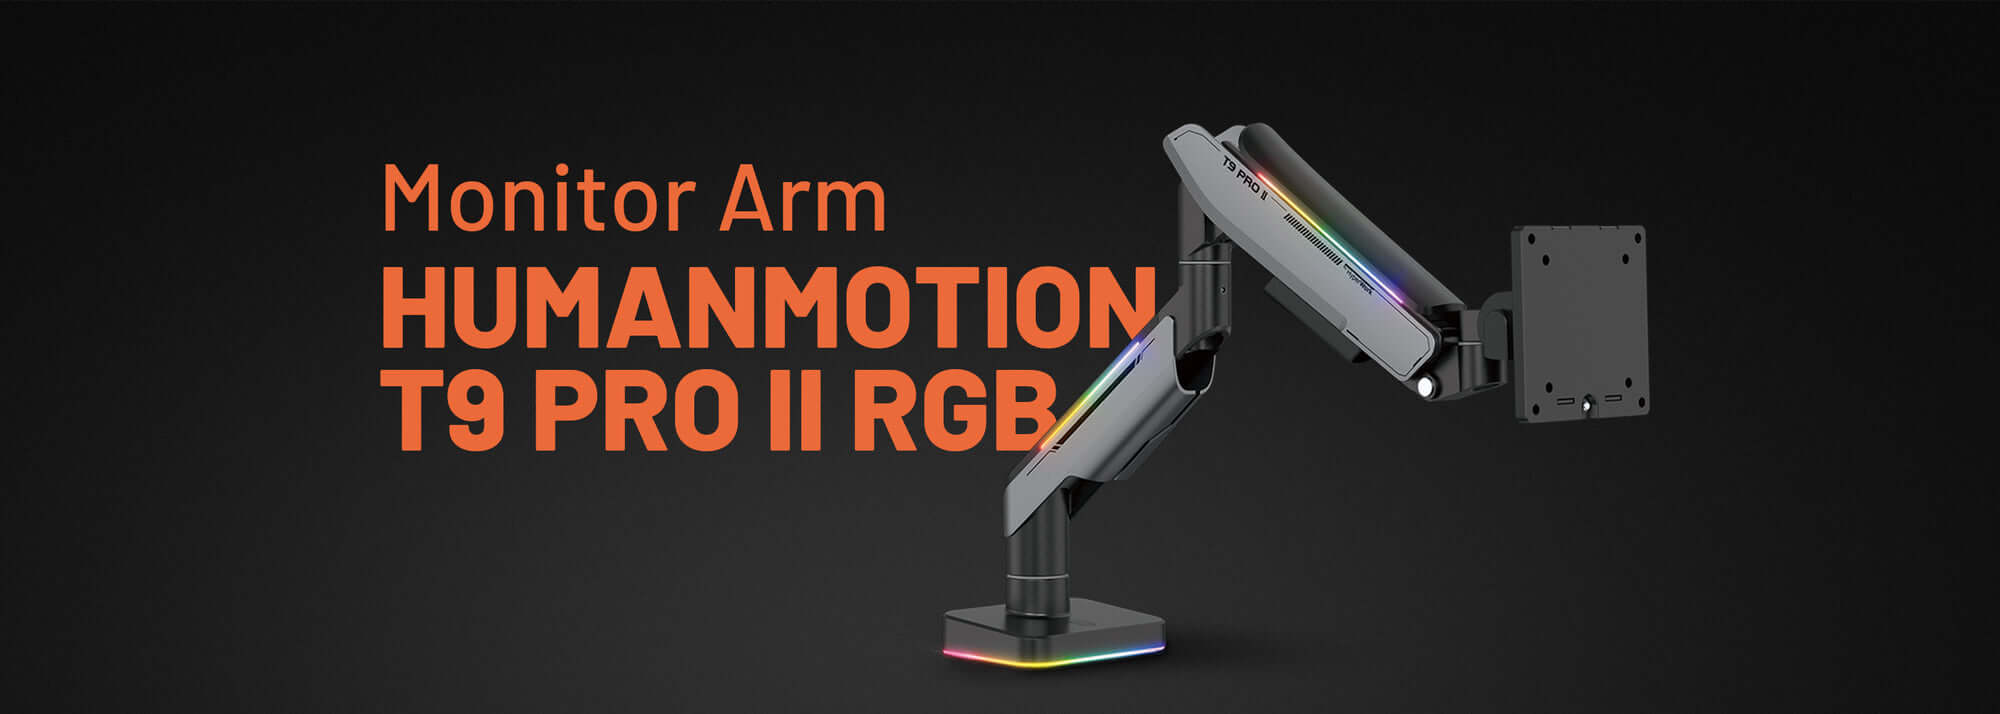 Human Motion T9 Pro II RGB TTD page 3